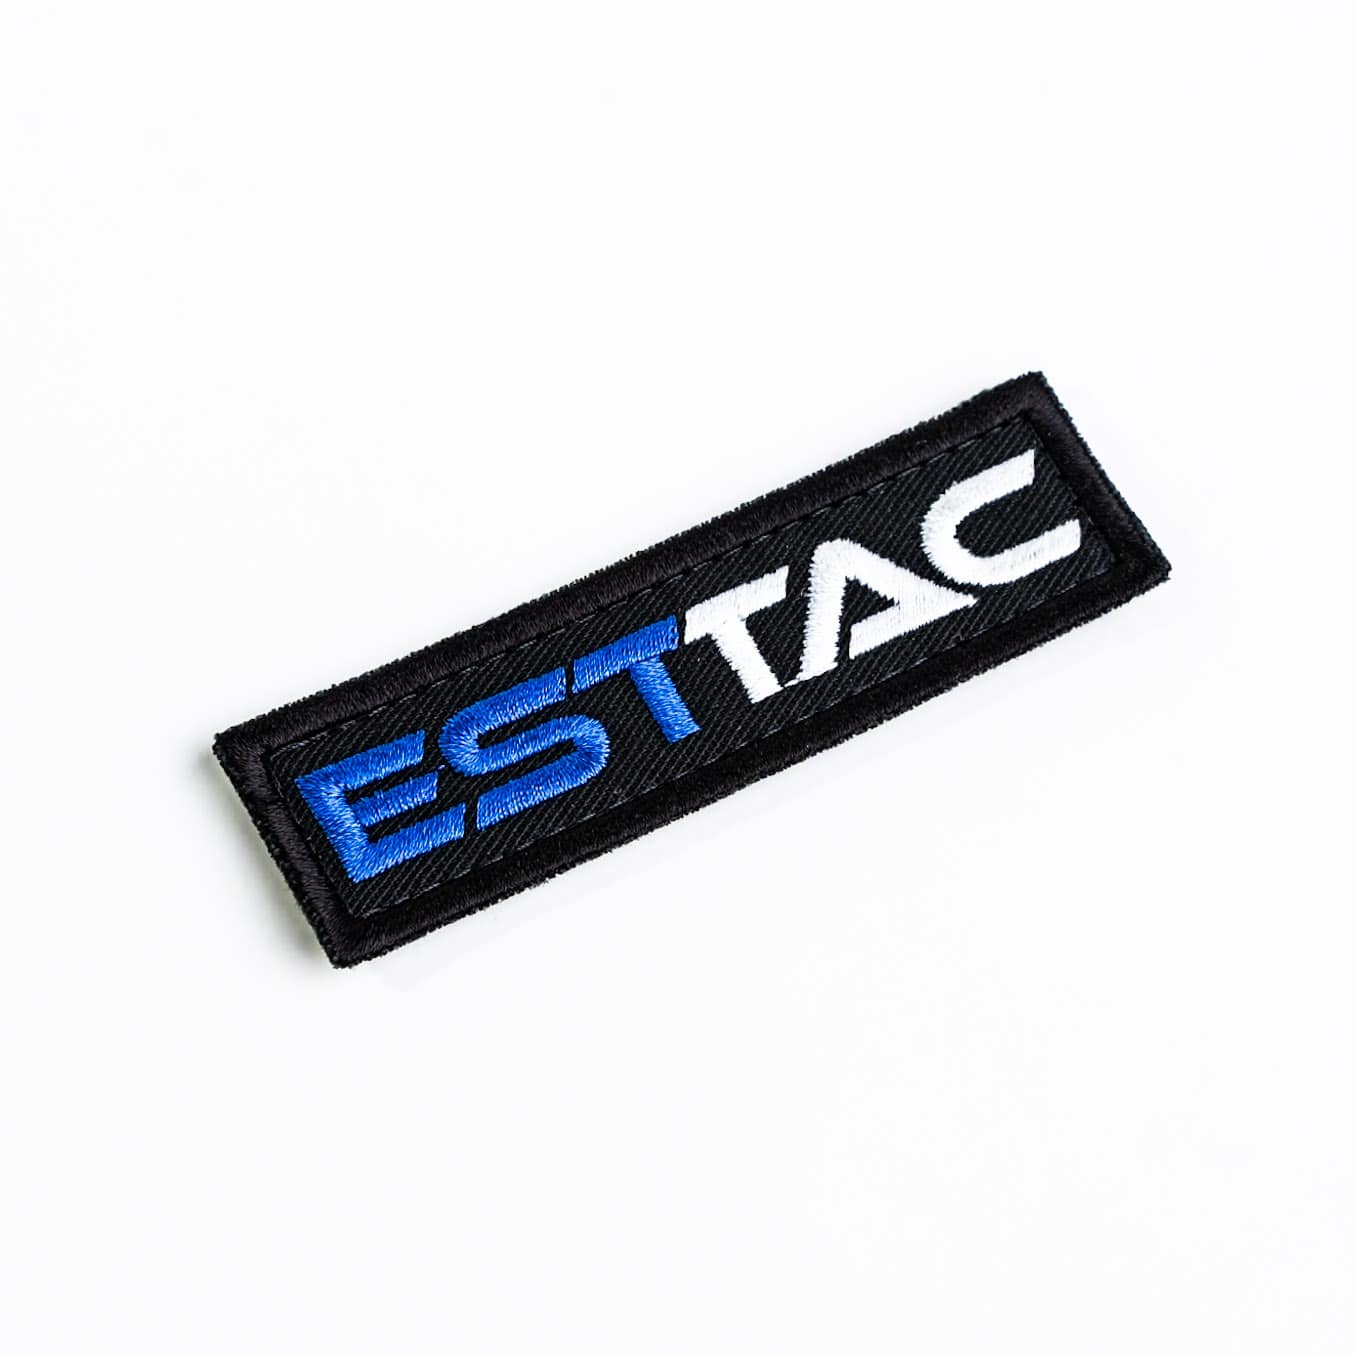 ESTTAC Patch